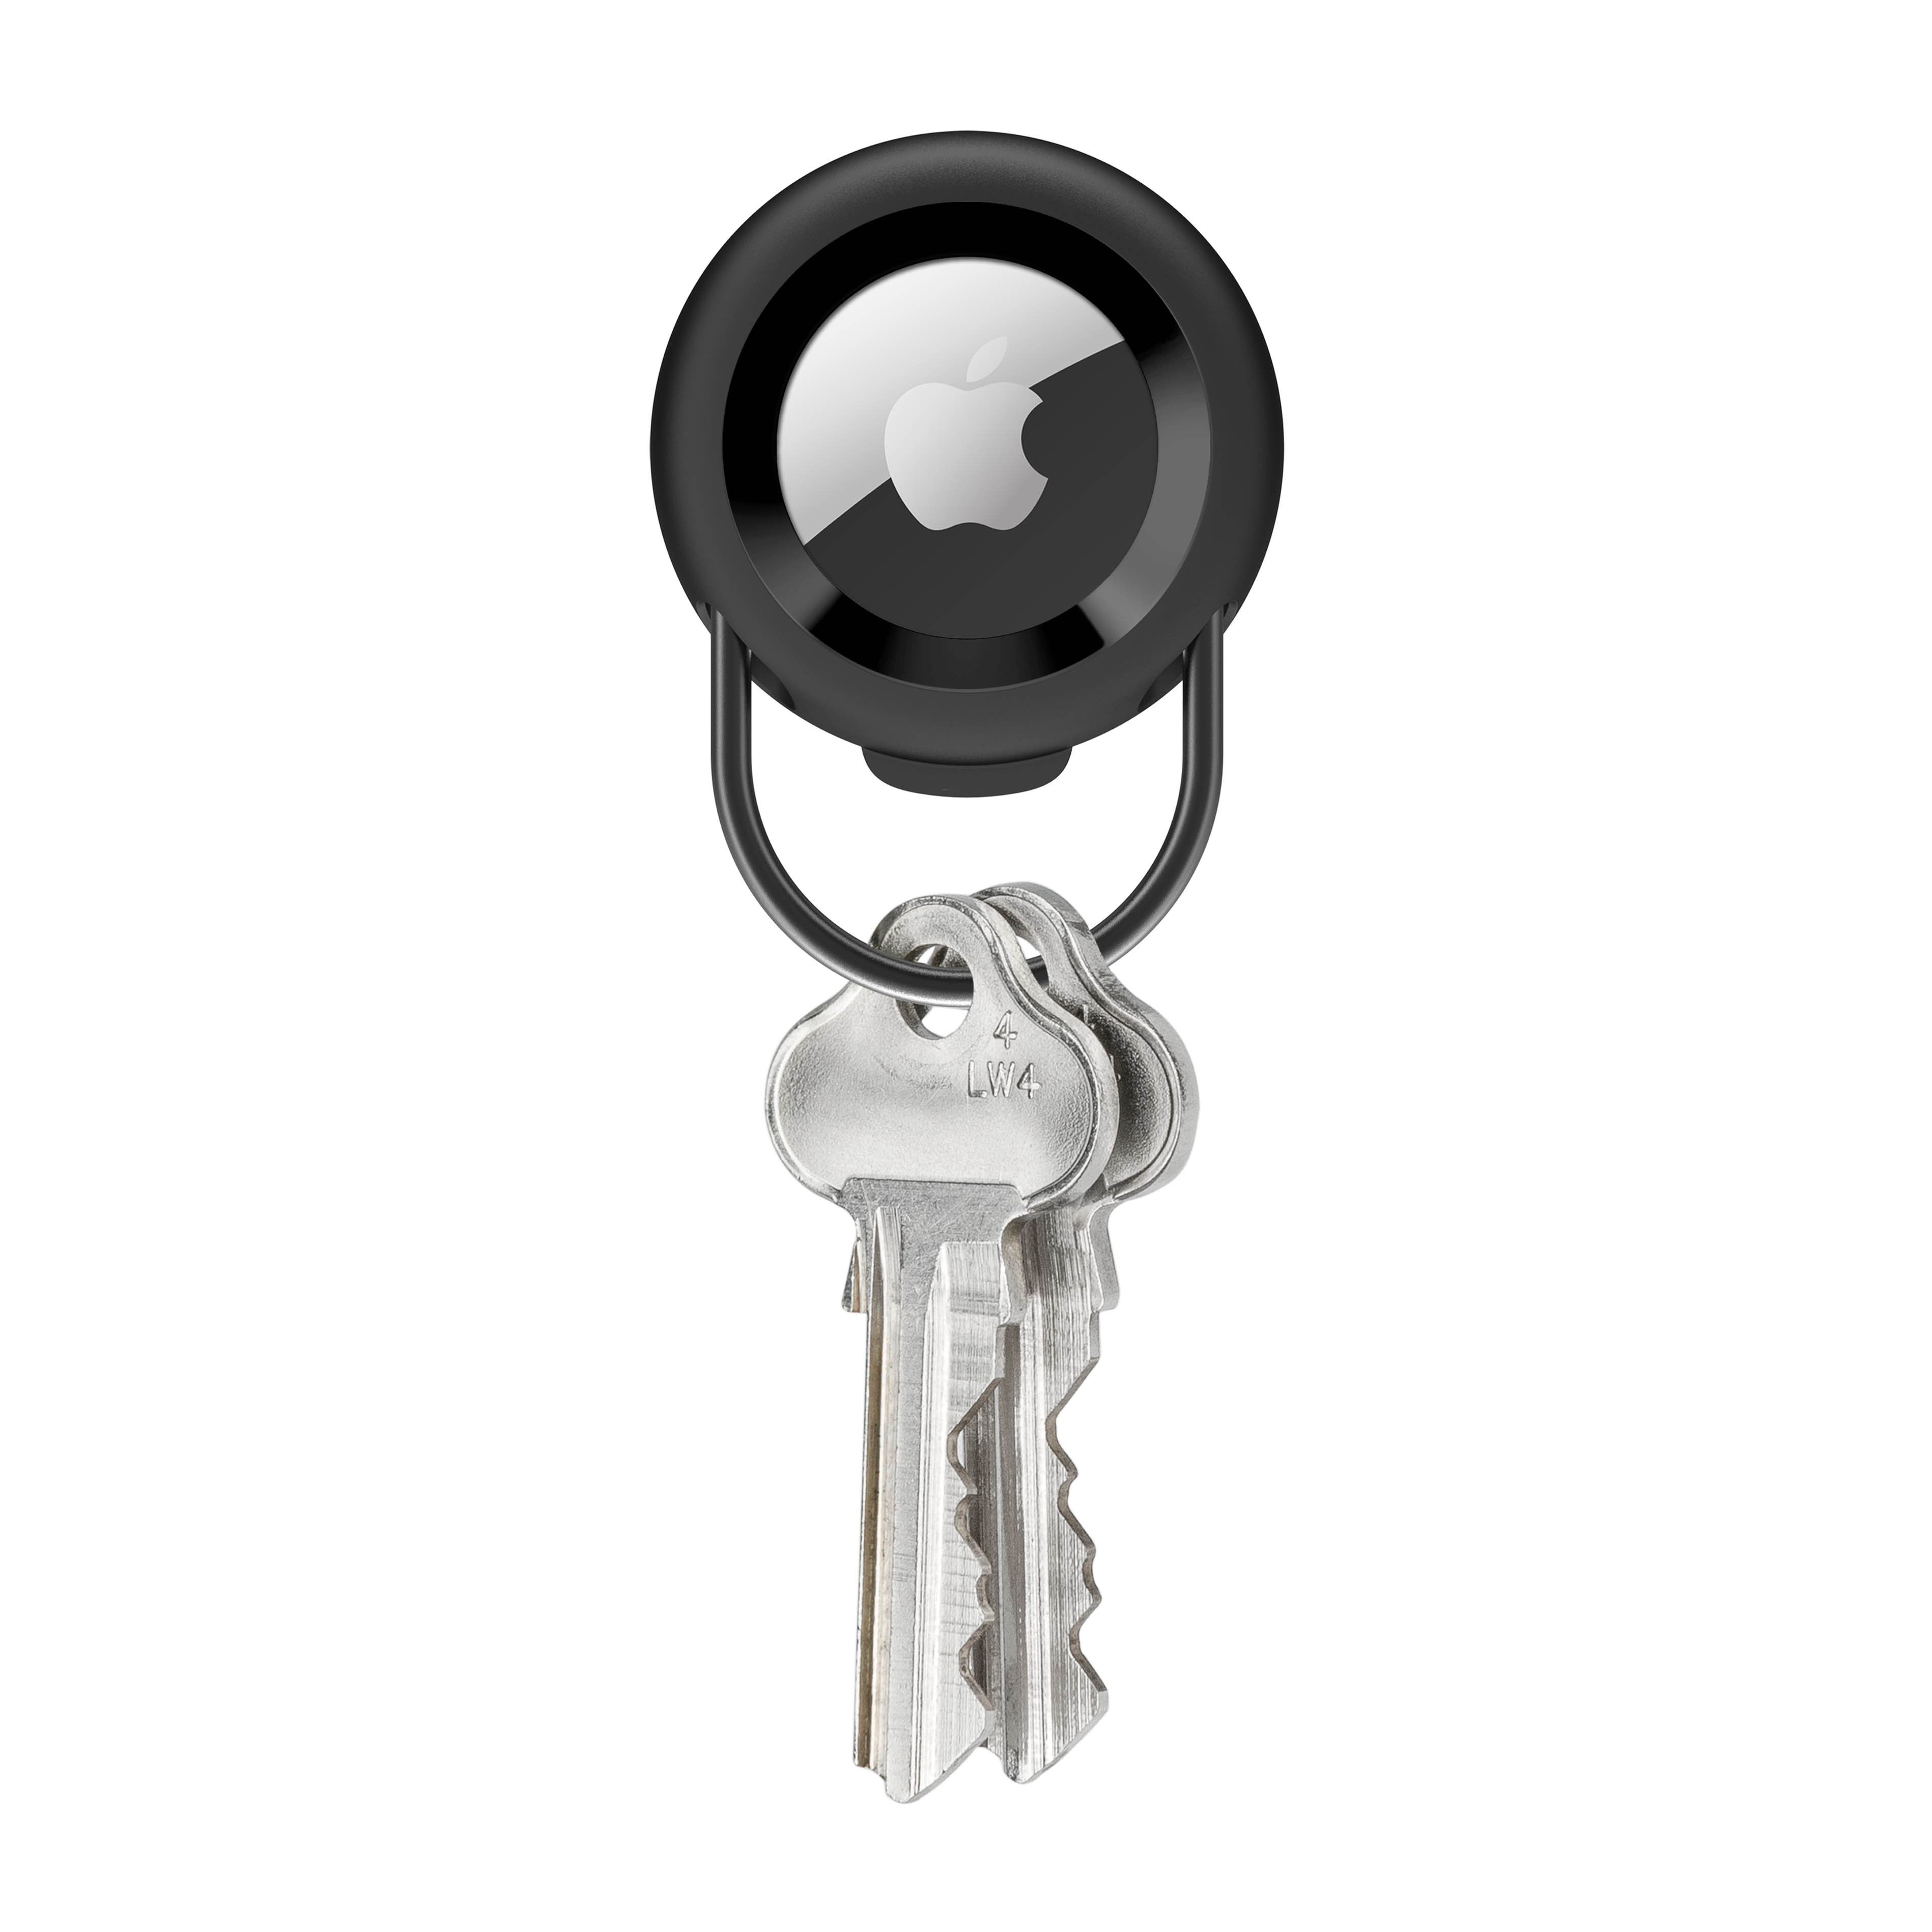 Rinkge Airtag Slim Case Pouch Keychain AirTag charme avec